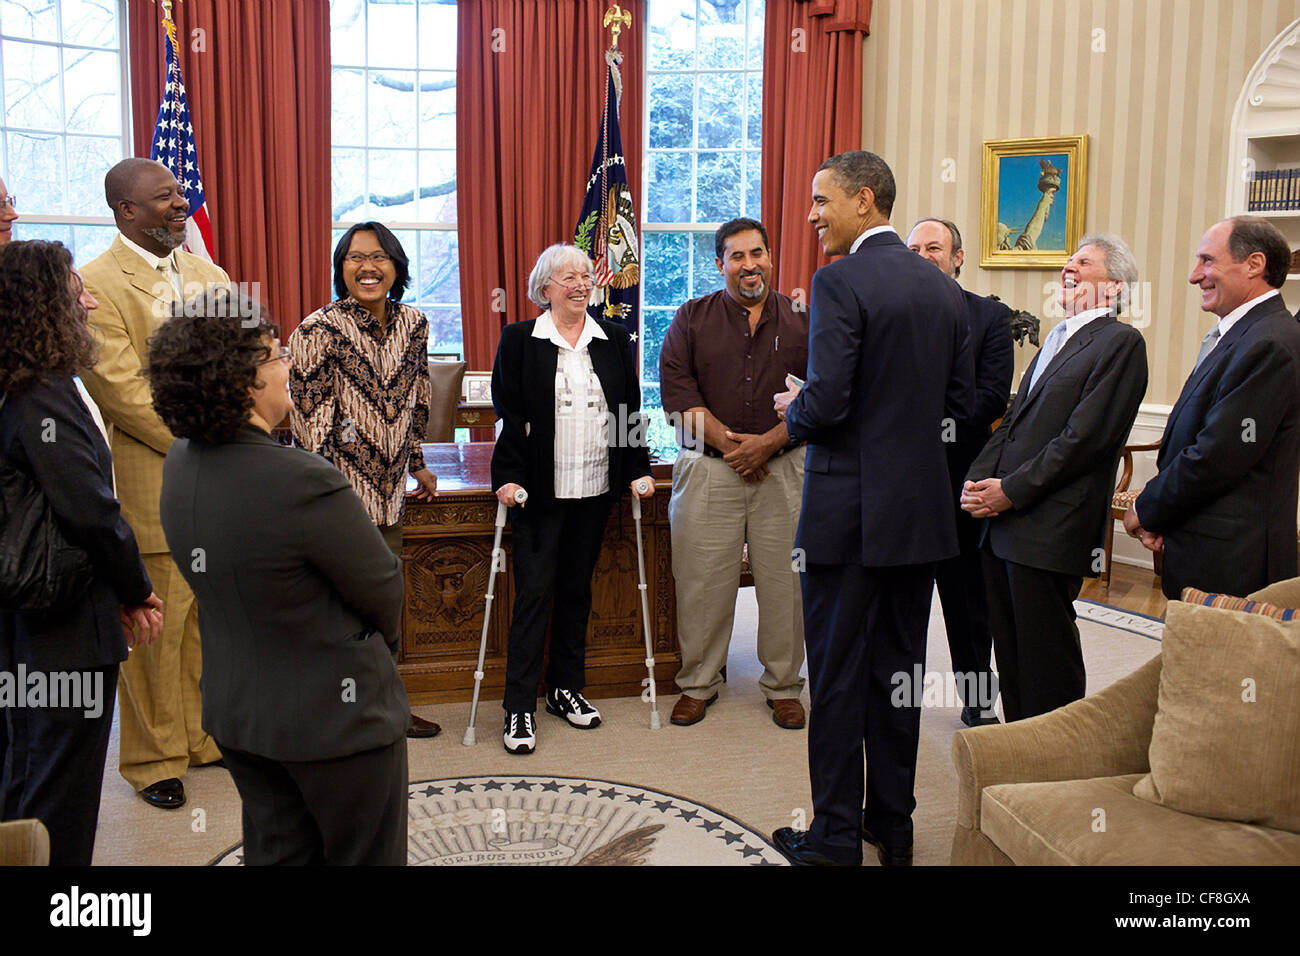 El presidente Barack Obama se reúne con los ganadores del Premio Ambiental Goldman en la Oficina Oval de la Casa Blanca el 13 de abril de 2011 en Washington, DC. El premio ambiental Goldman es un premio otorgado anualmente a las organizaciones ecologistas, uno por cada una de las seis regiones geográficas del mundo. Foto de stock